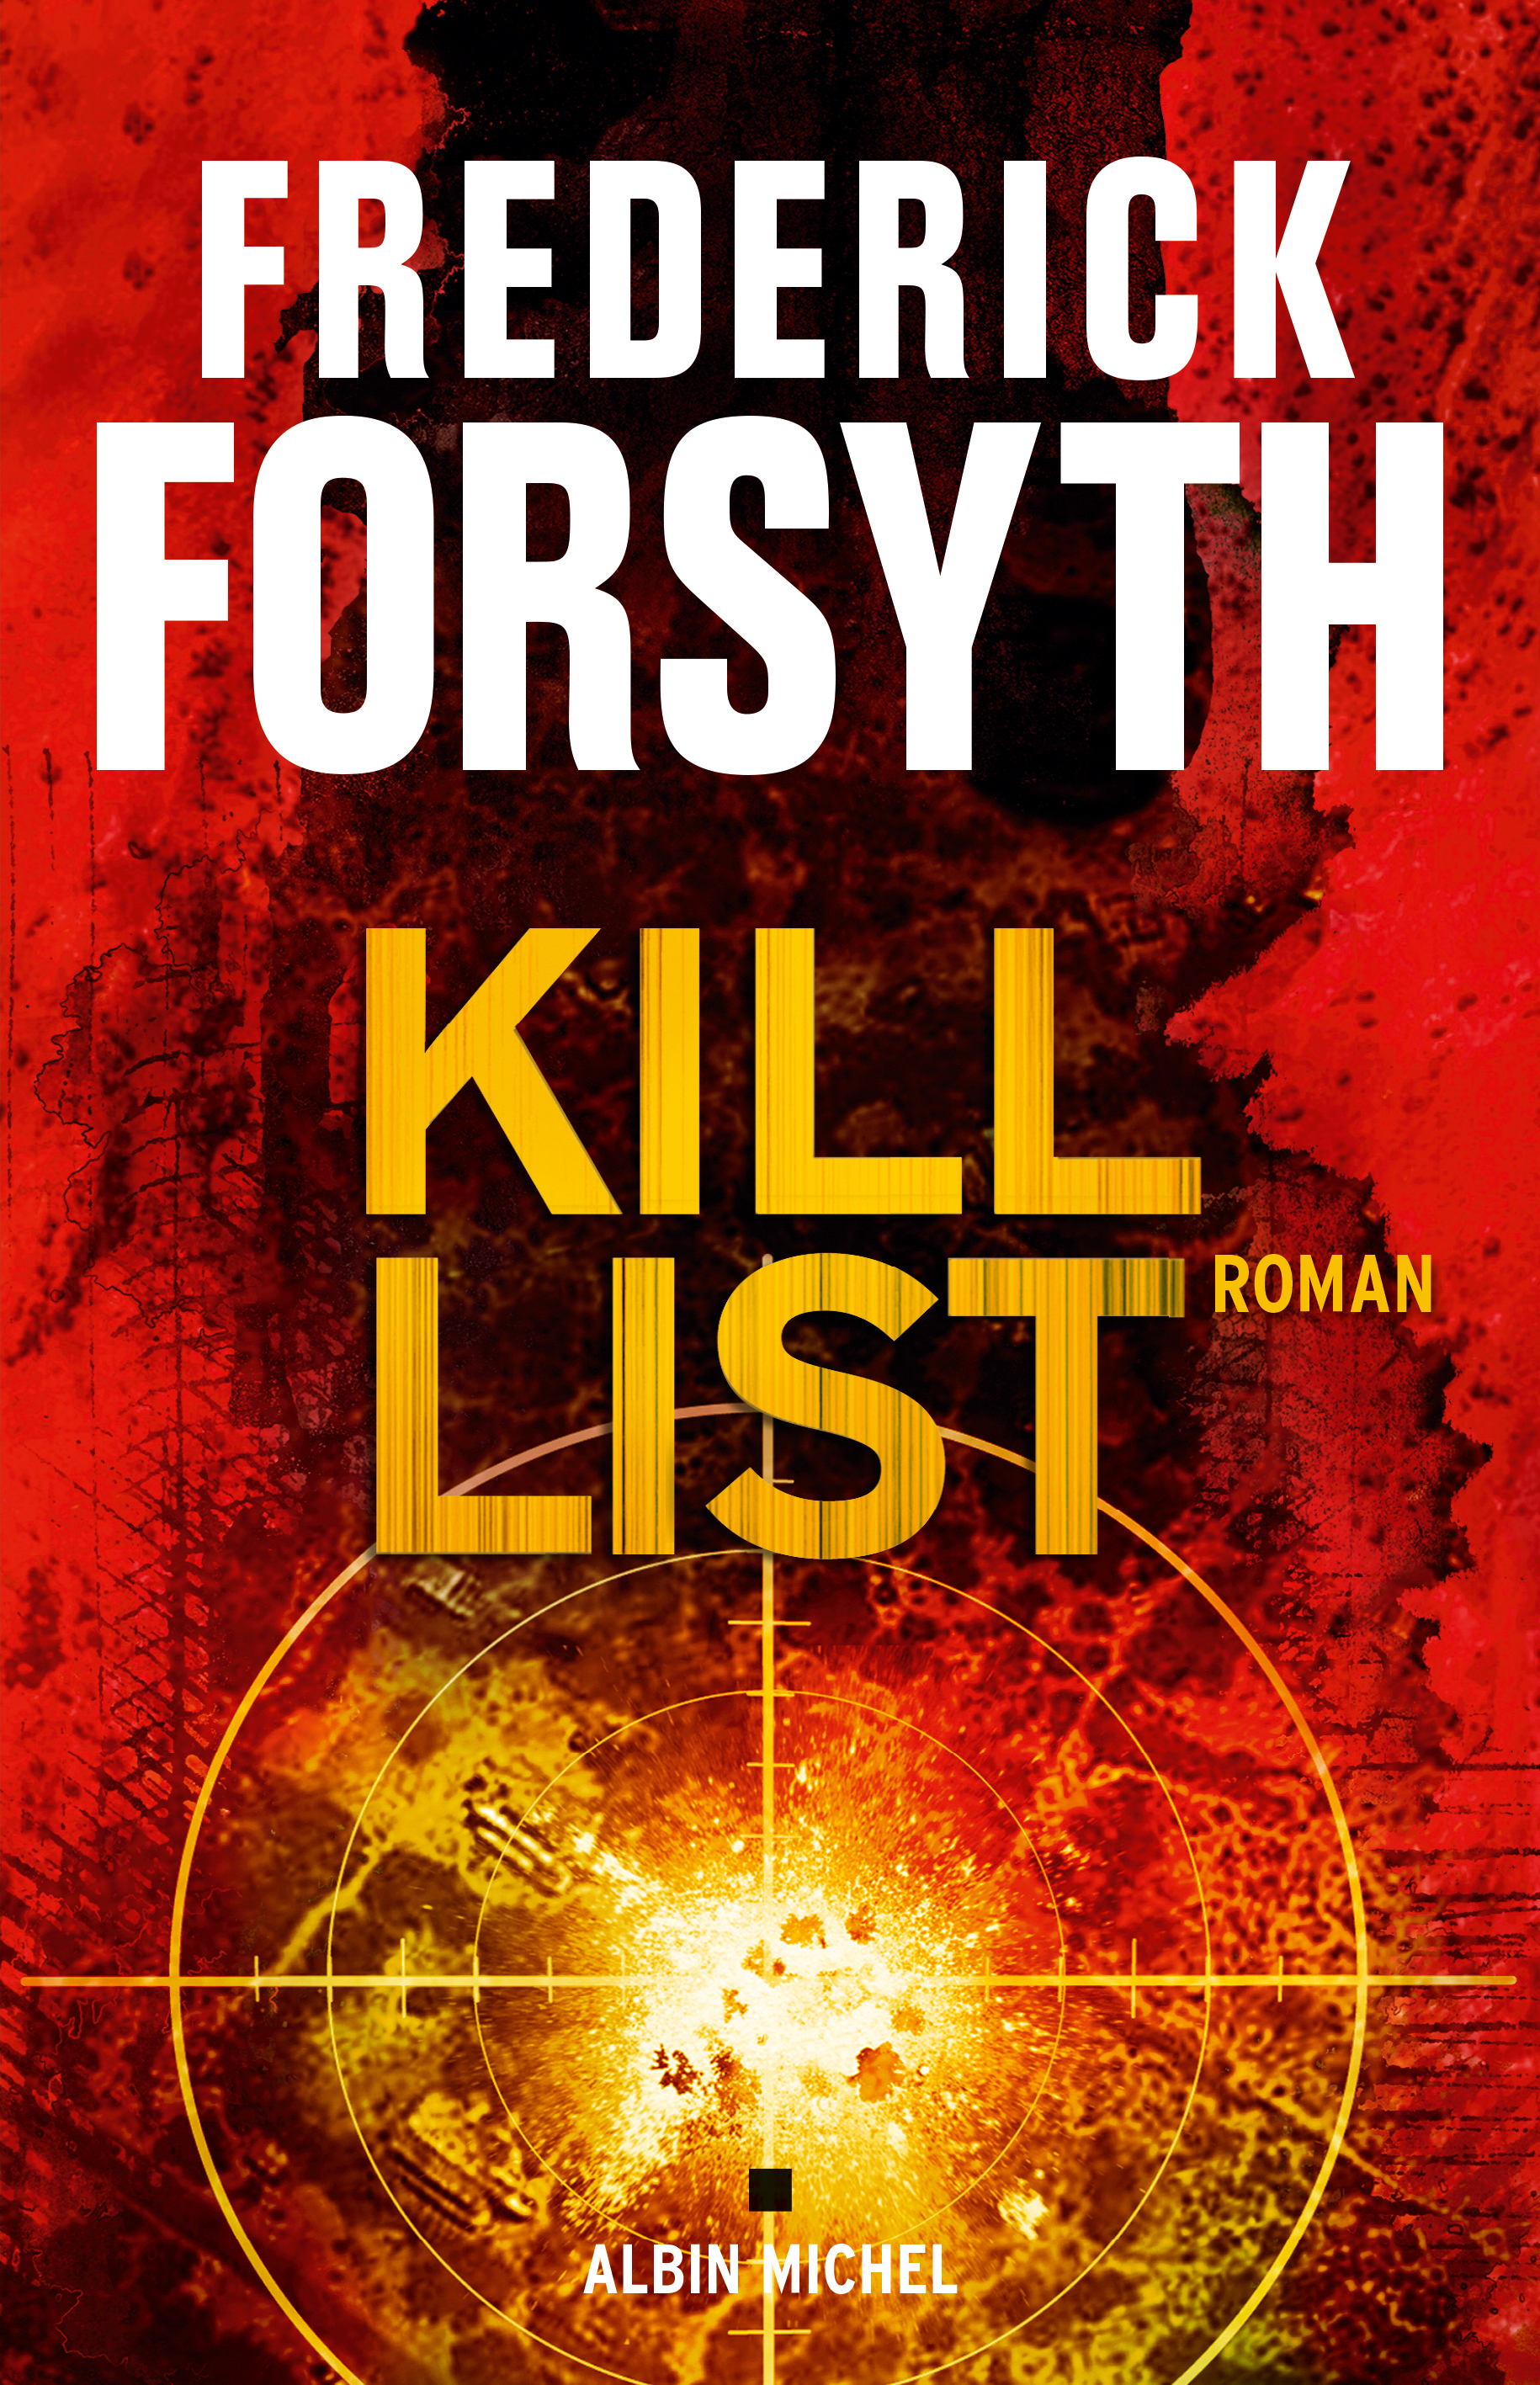 Couverture du livre Kill list